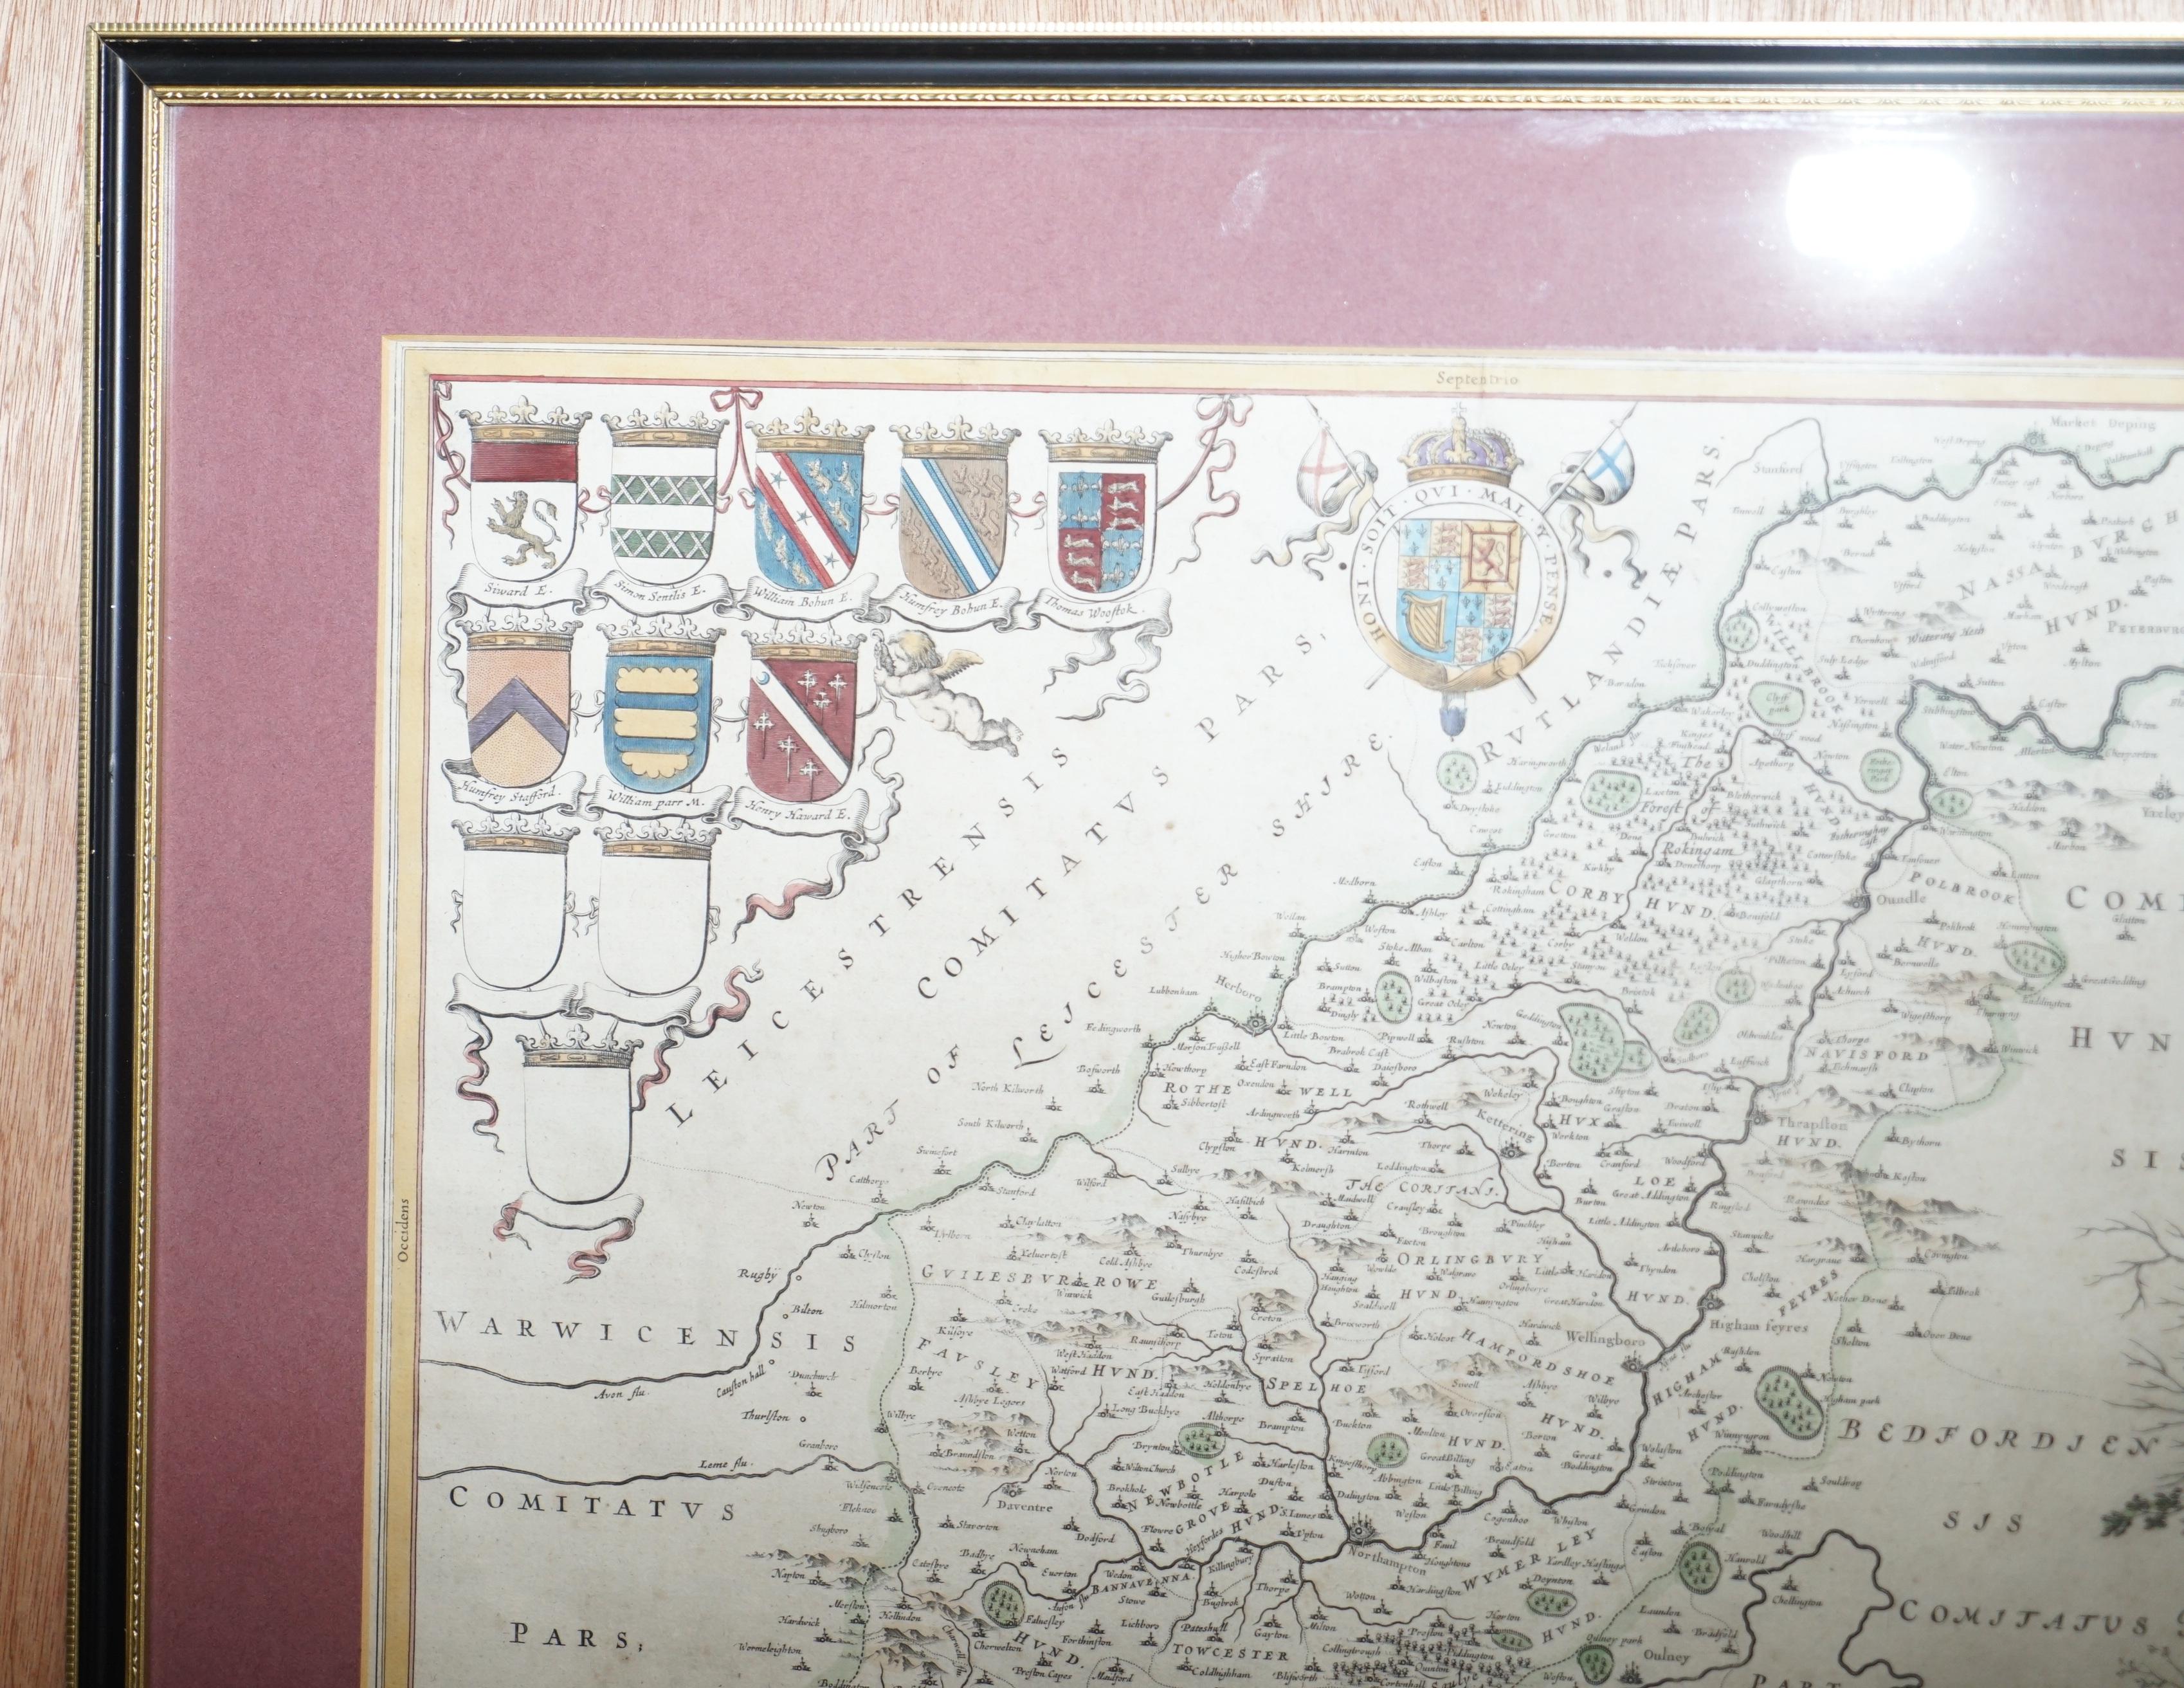 Nous sommes ravis de vous présenter cette belle carte ancienne du Northamptonshire imprimée en 1645 à Amsterdam Staffordiensis Comitatvs Vulgo

J'ai trois de ces cartes, chacune couvrant une partie différente du pays, les deux autres sont listées